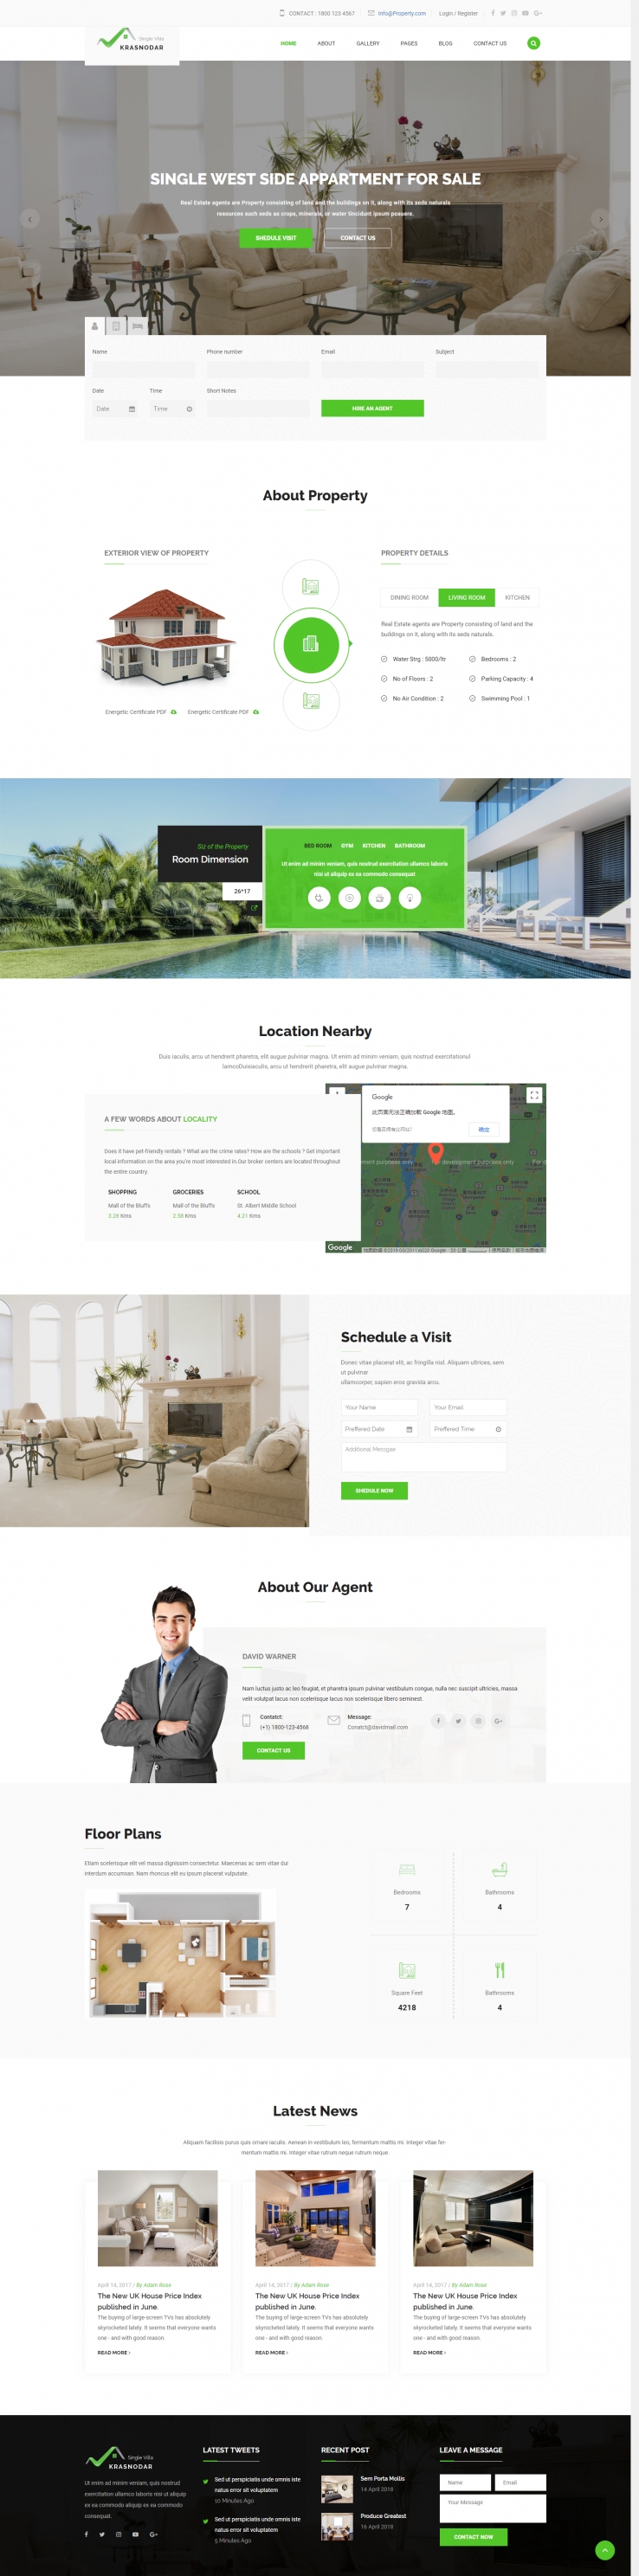 绿色简洁风格的二手房交易企业网站源码下载